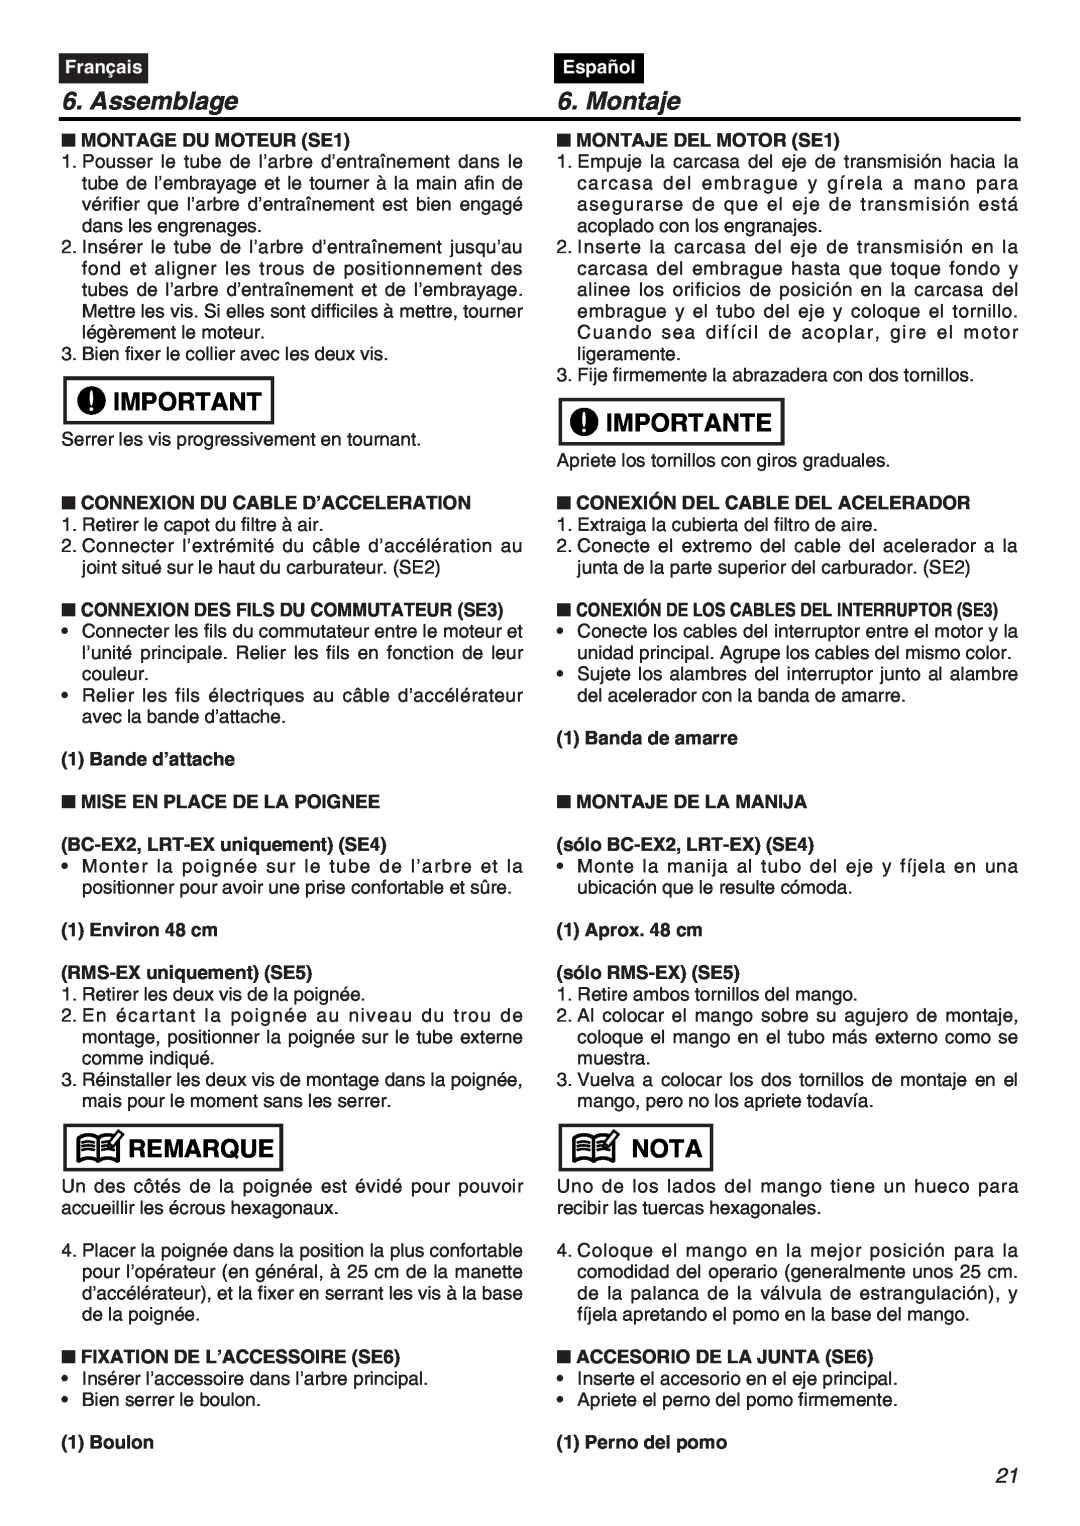 RedMax EXZ2401S-PH-CA manual Assemblage, Montaje, Importante, Remarque, Nota, Français, Español 